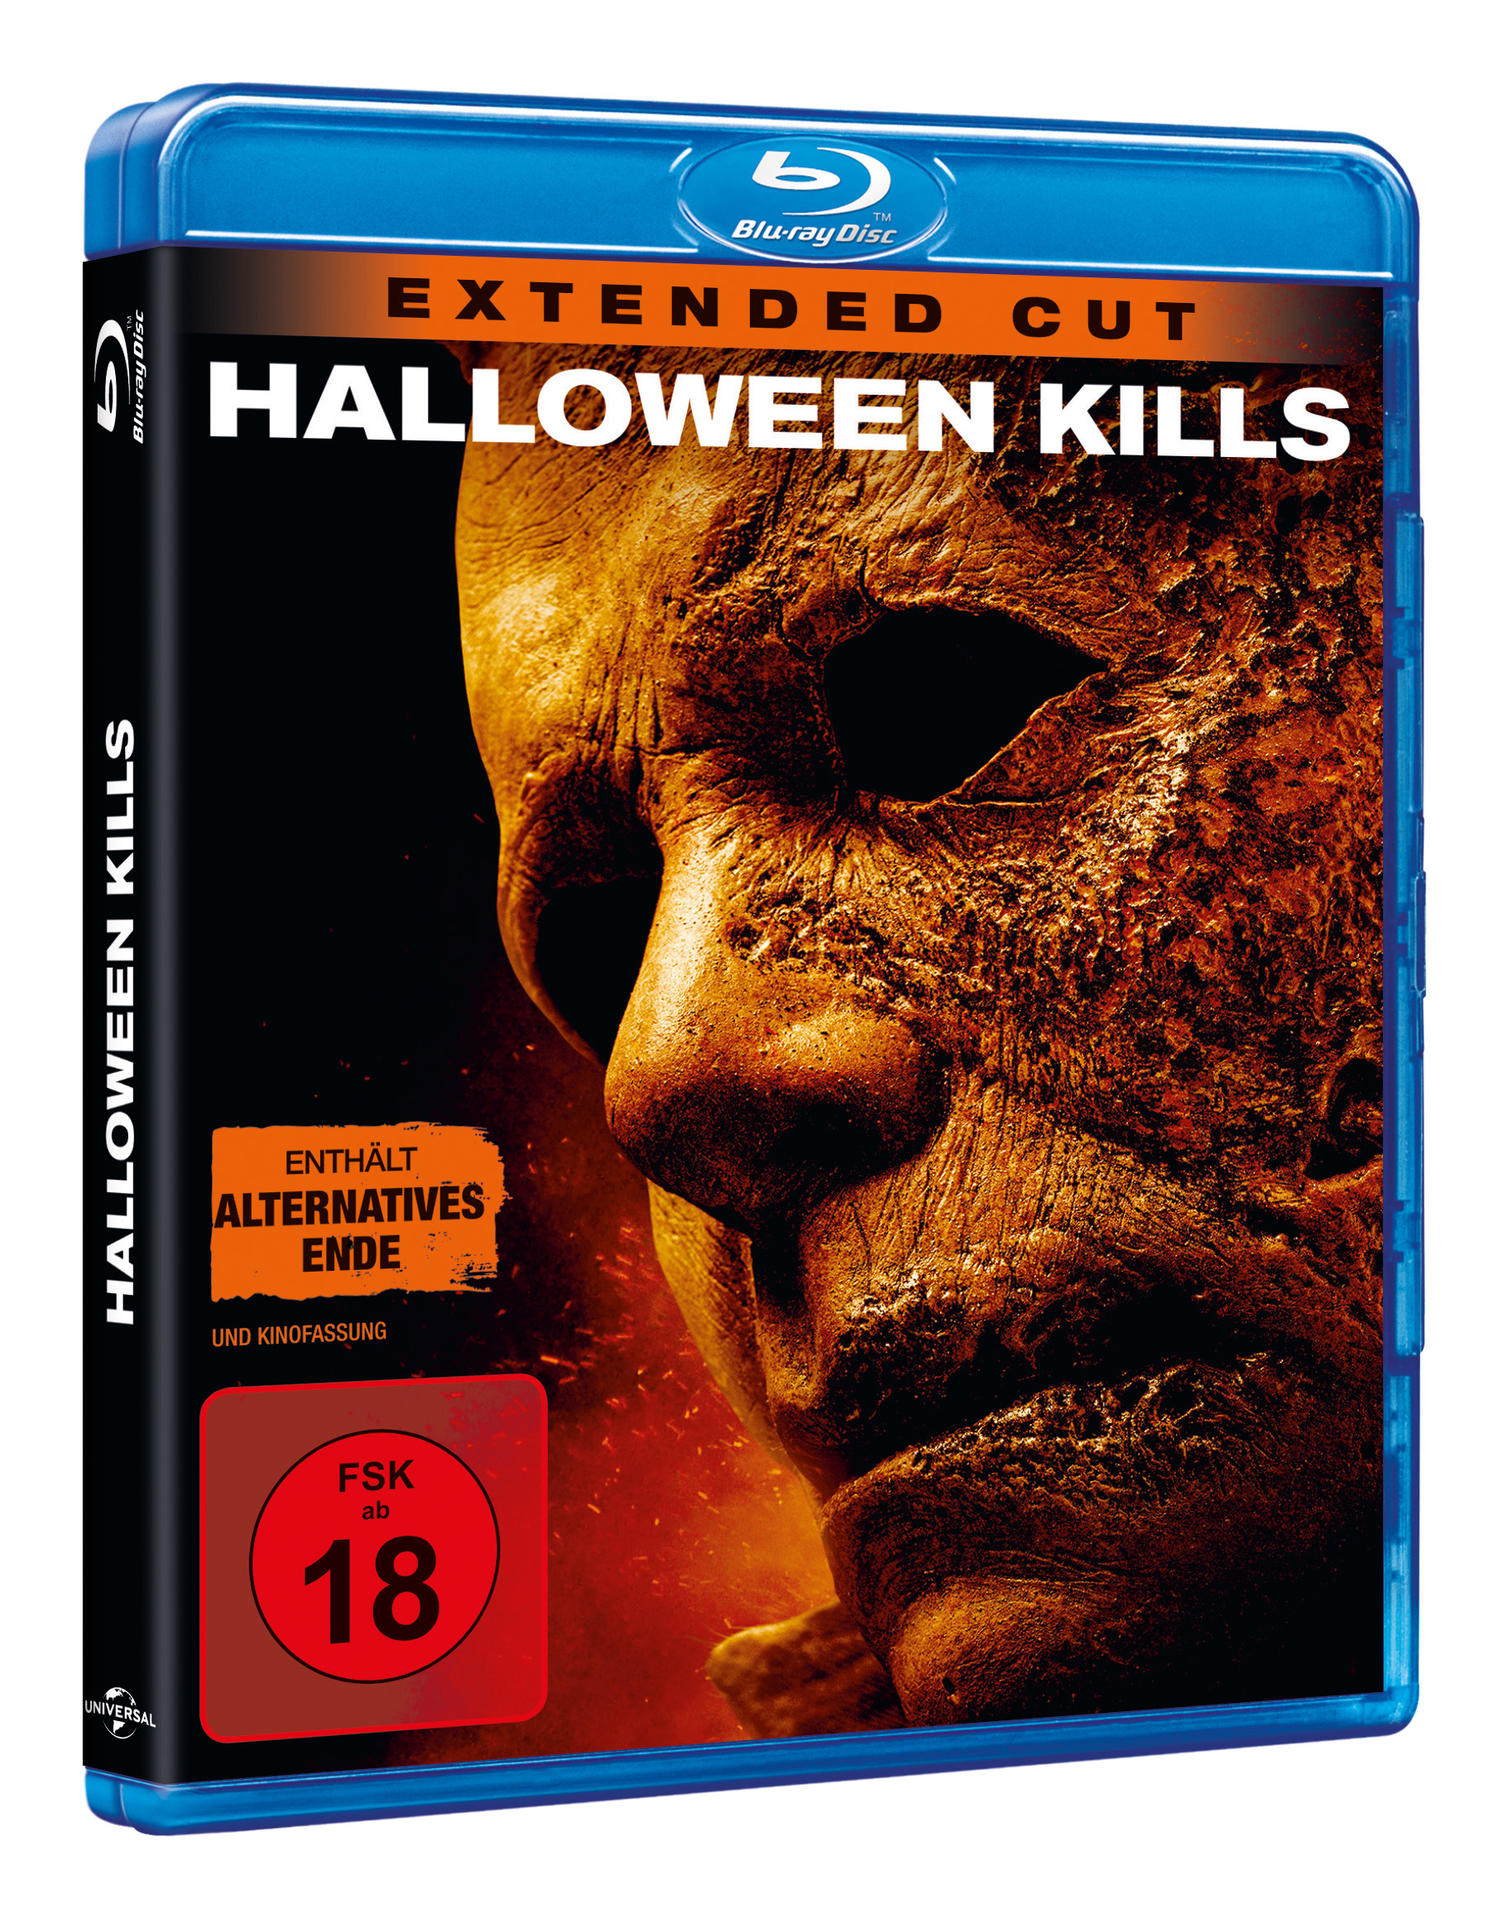 Kills Blu-ray Halloween